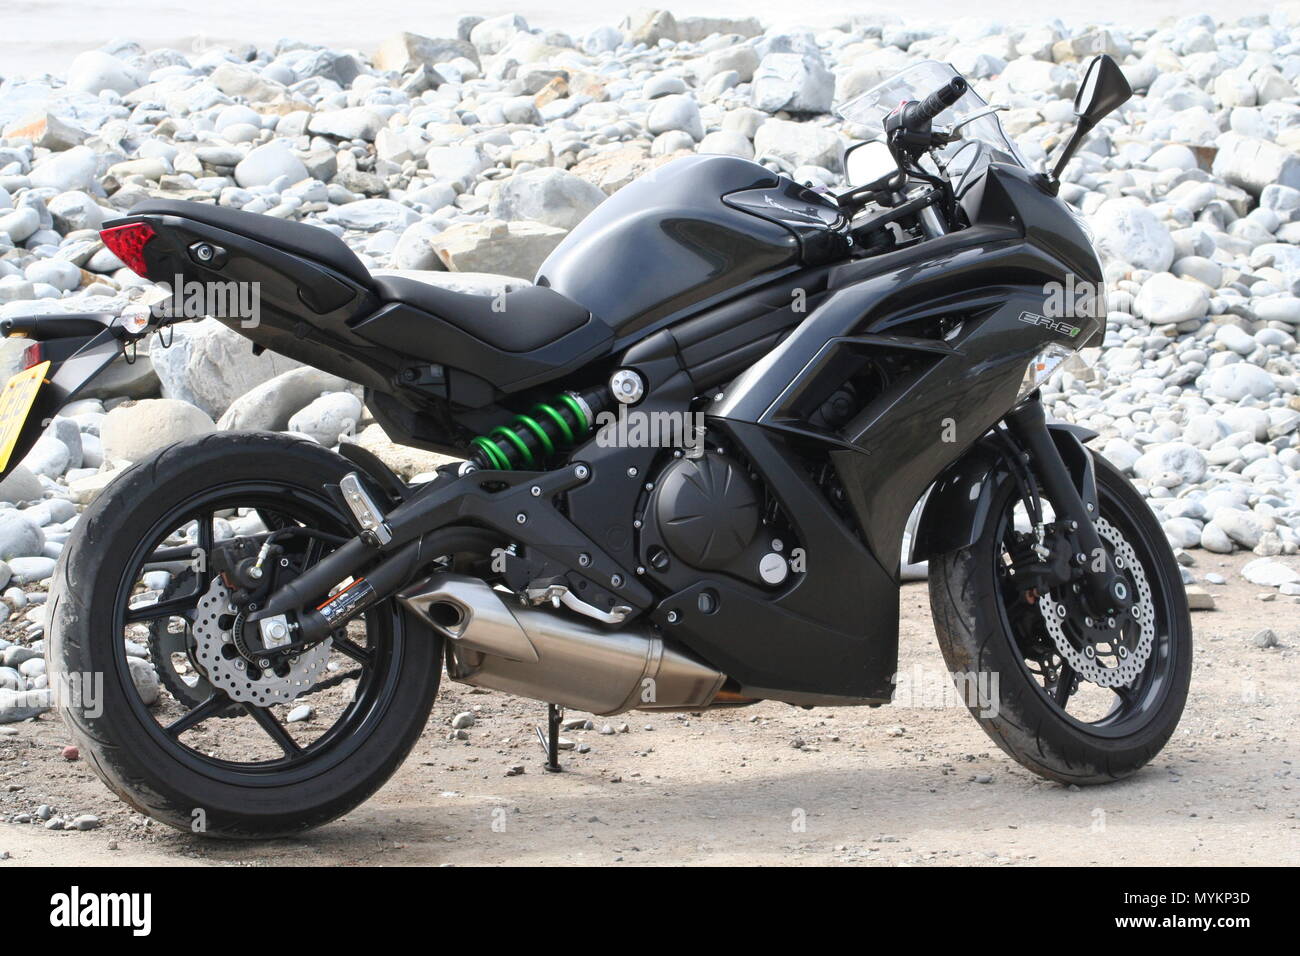 Schwarze Kawasaki Motorrad an der Küste geparkt Stockfotografie - Alamy